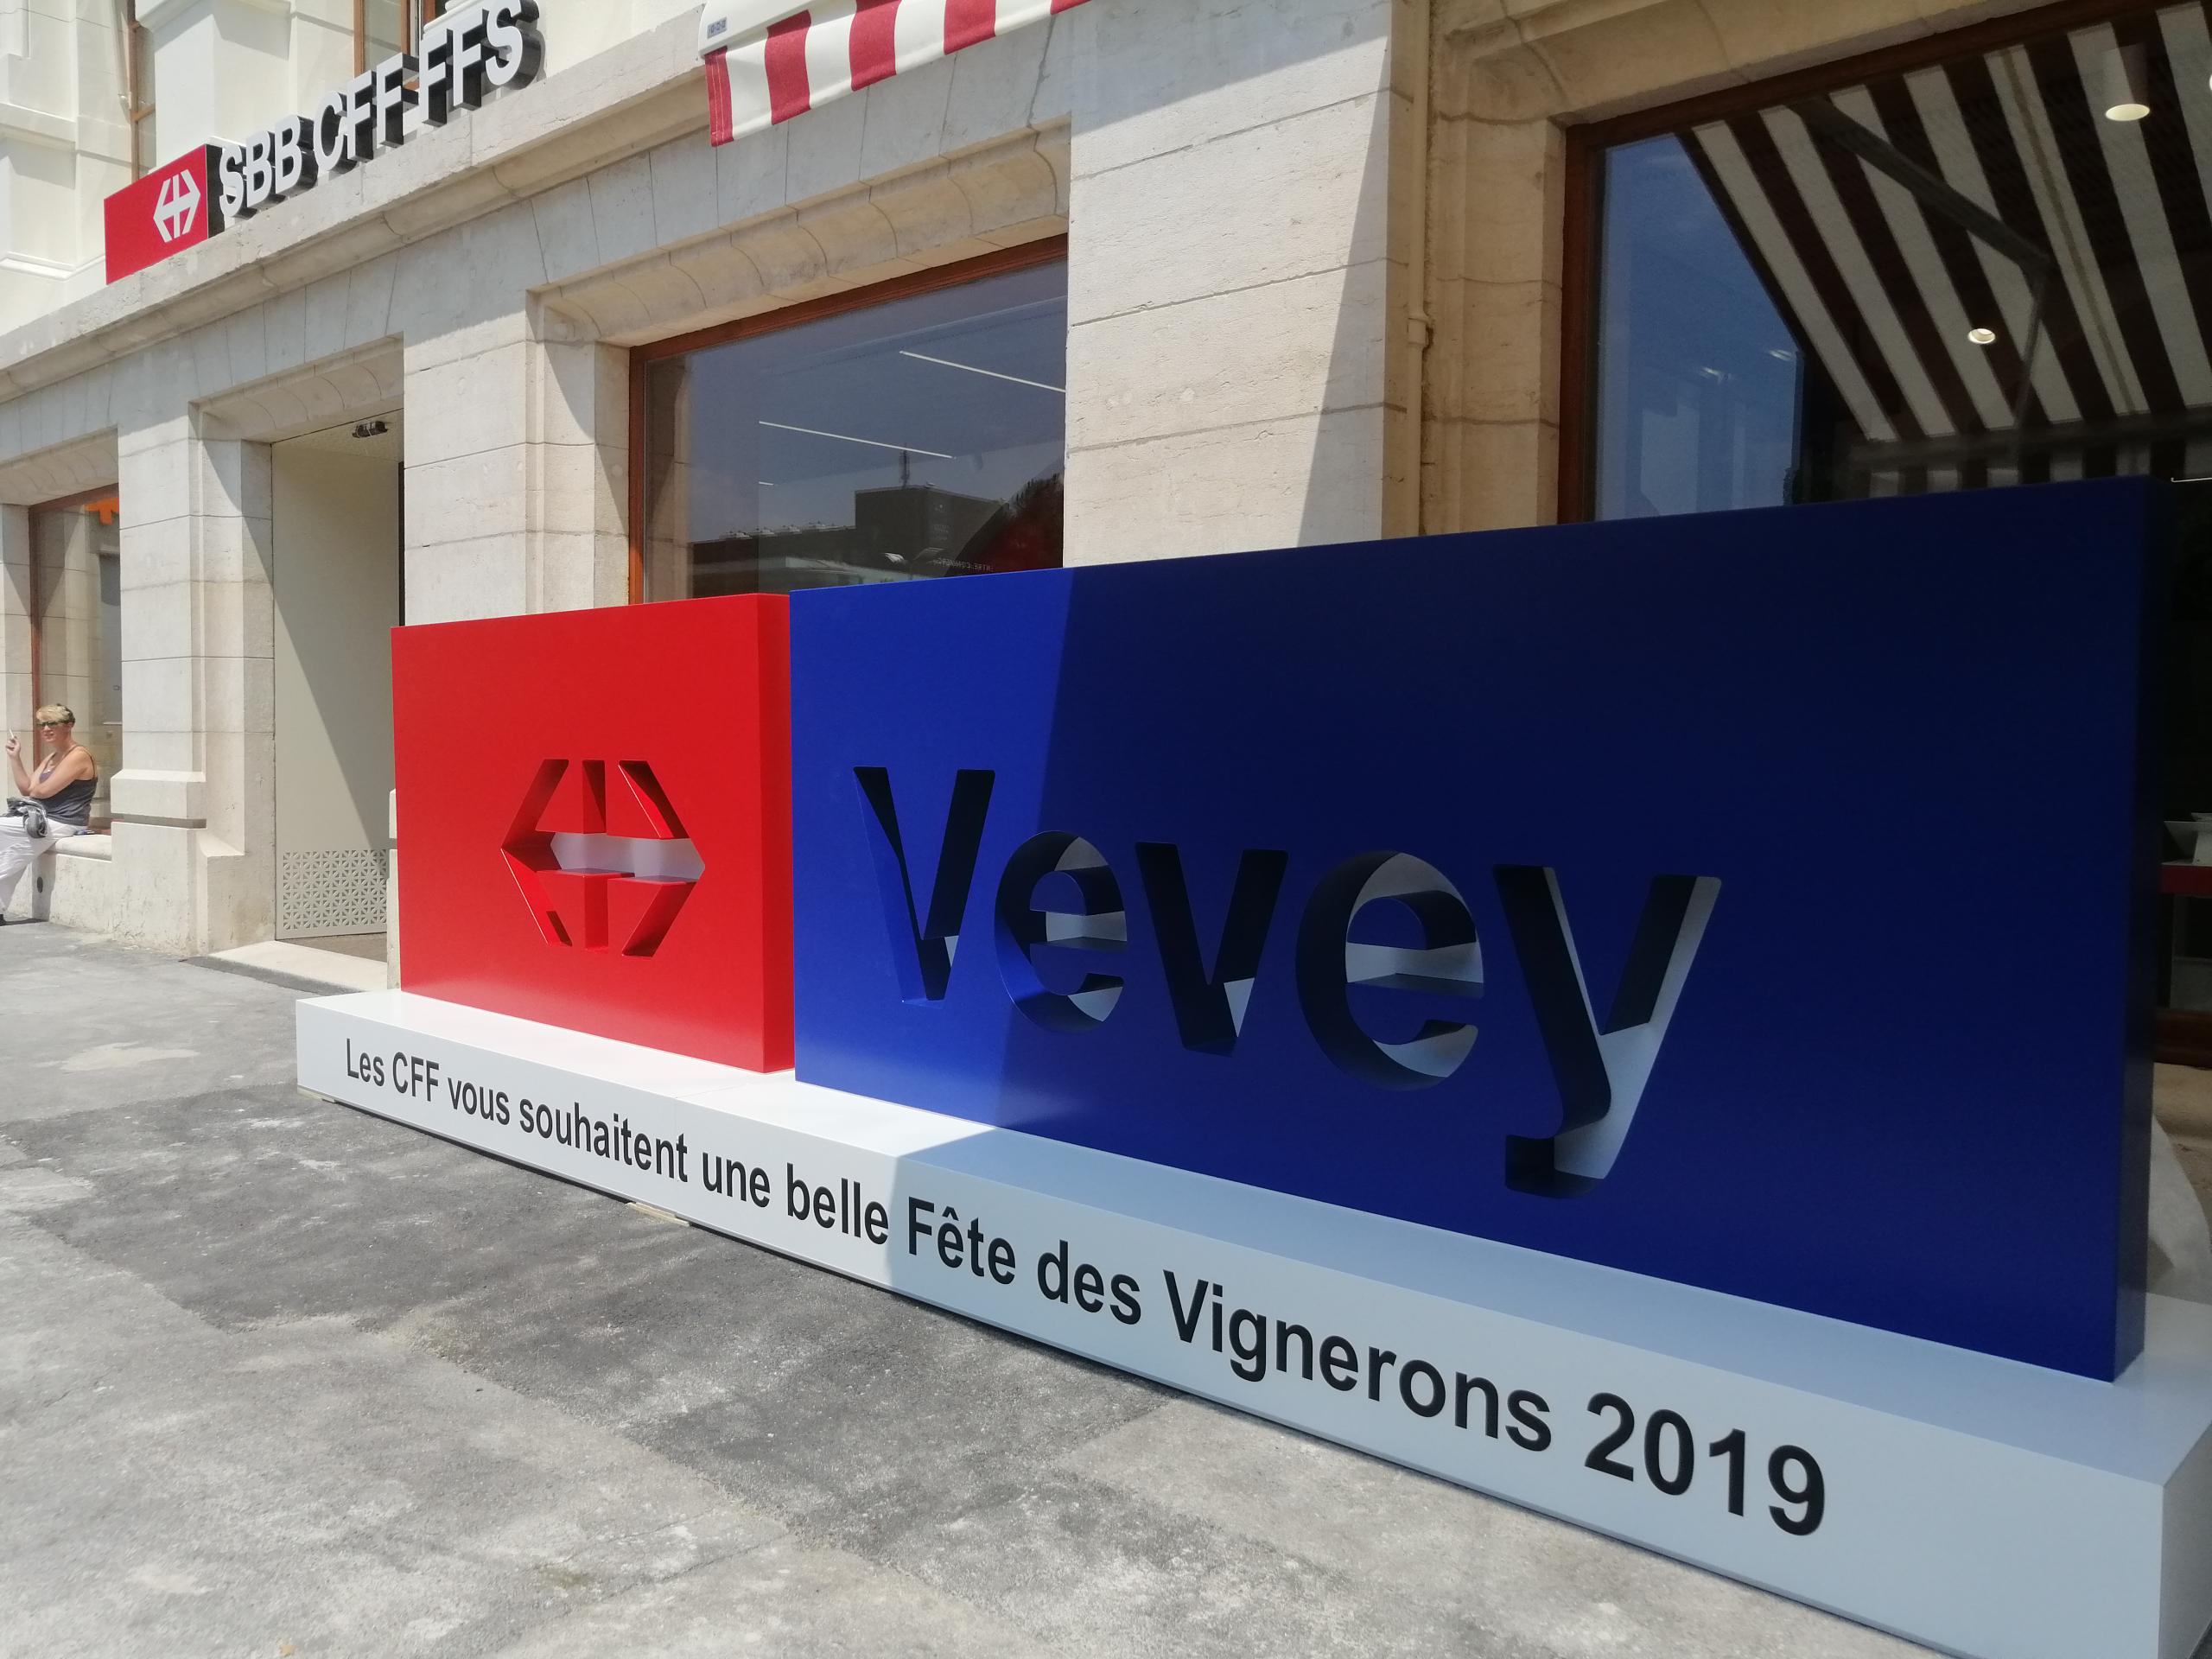 La gare de Vevey est fin prête pour la Fête des Vignerons